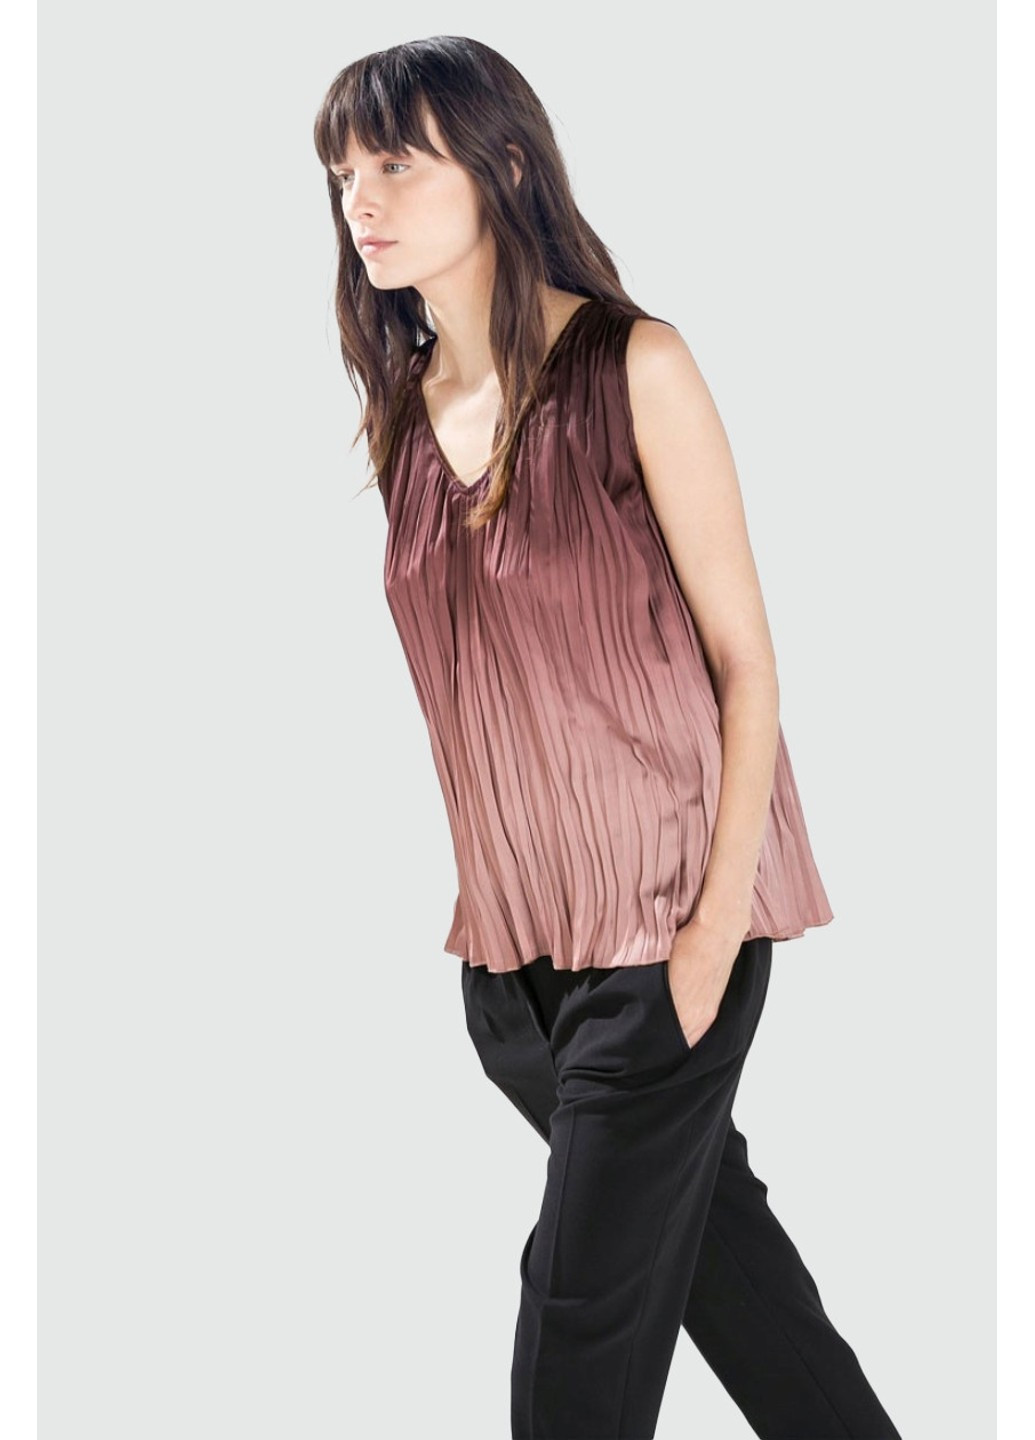 Бордовая блуза 1836/226/610 Zara